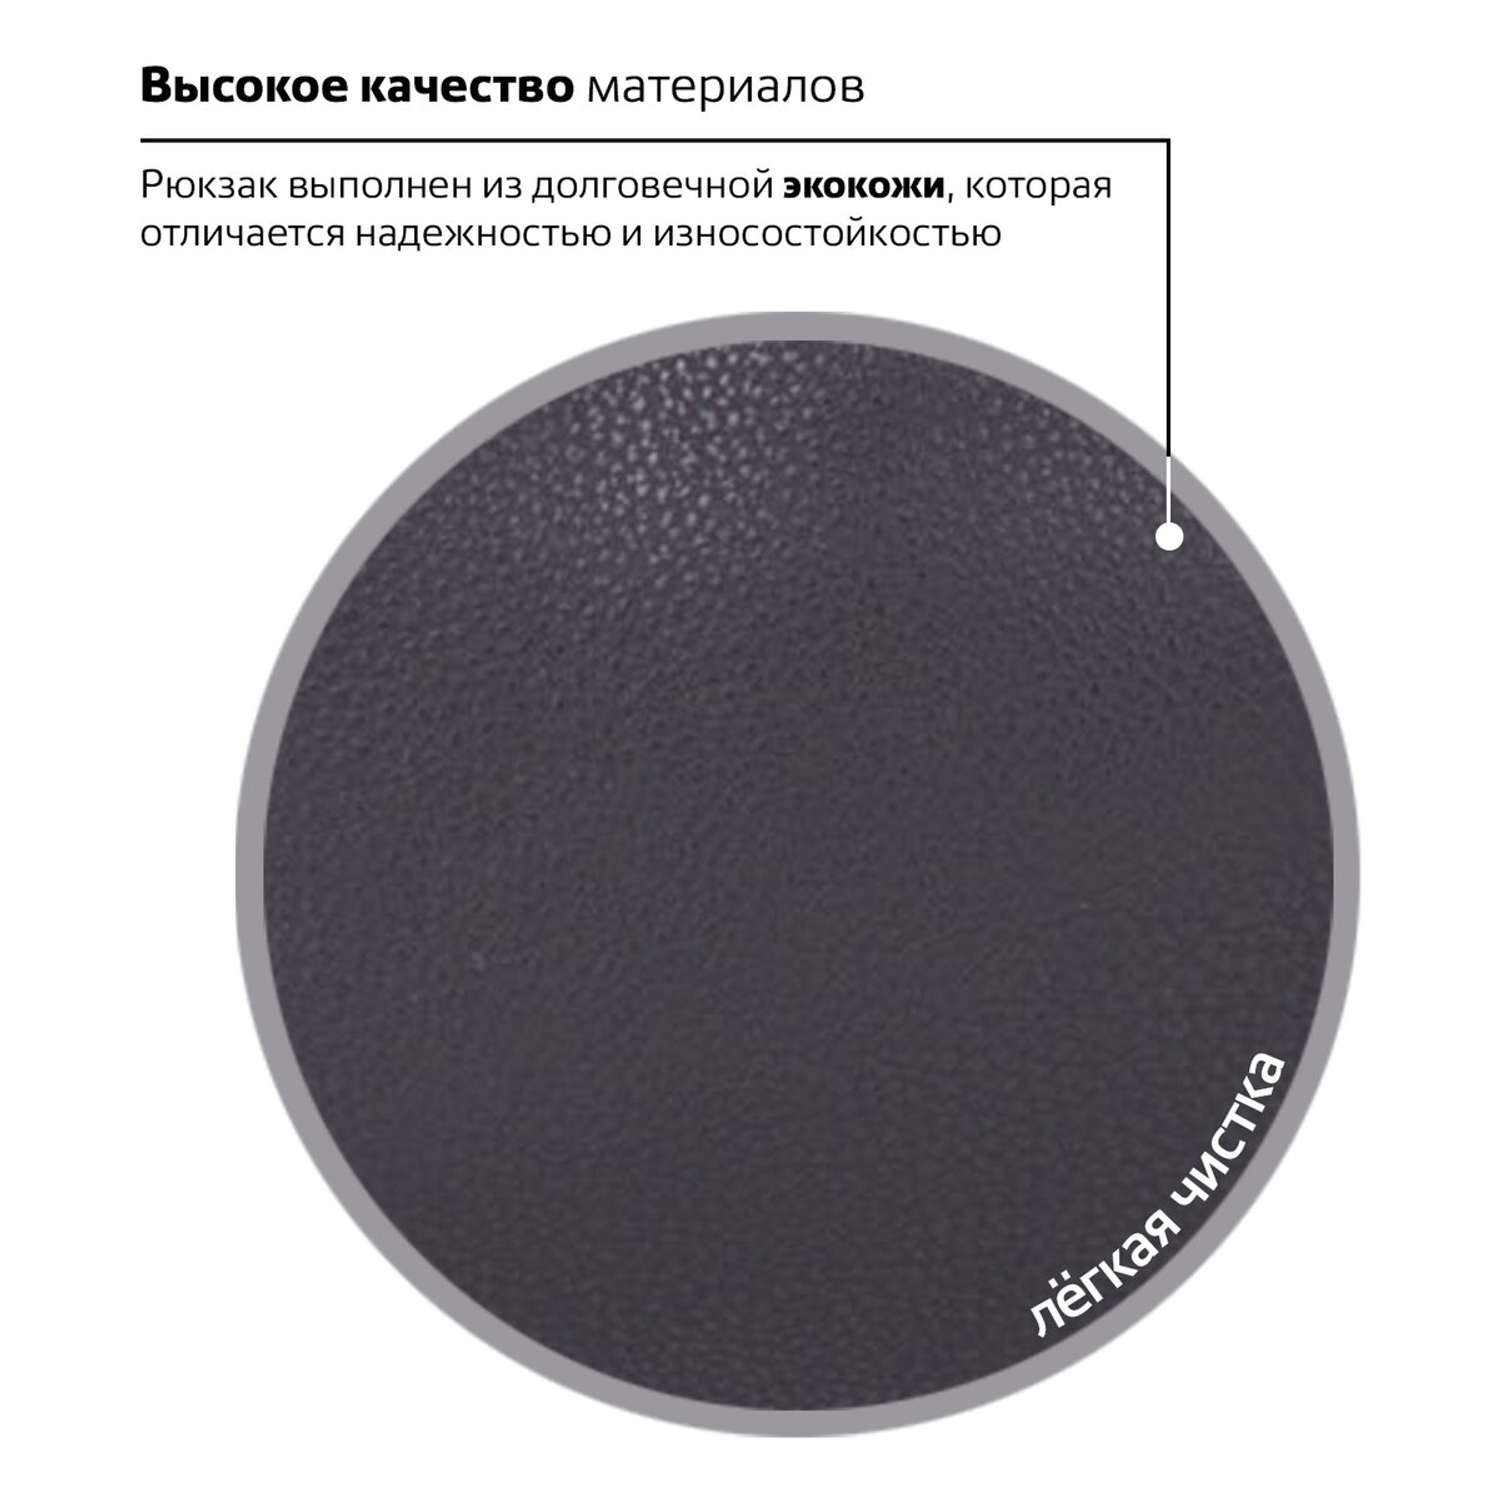 Рюкзак Brauberg Универсальный сити-формат черный кожзам Селебрити - фото 6